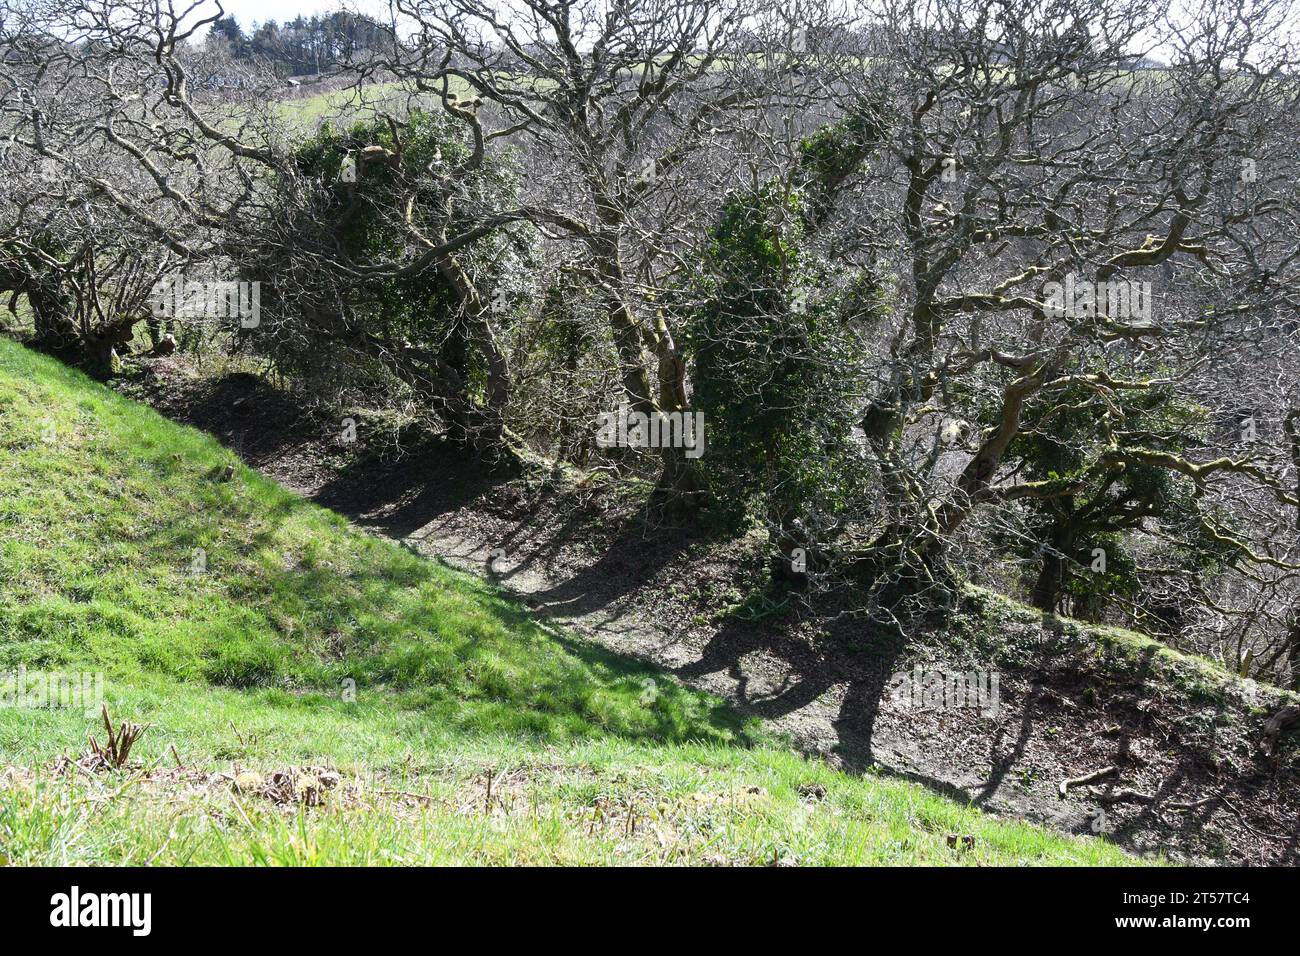 Teilweise bewaldeter Graben um die Burg Kilkhampton, auch bekannt als Penstowe Castle, mittelalterliche Festung von Motte und Bailey Bau auf einem Hügel Protektor Stockfoto